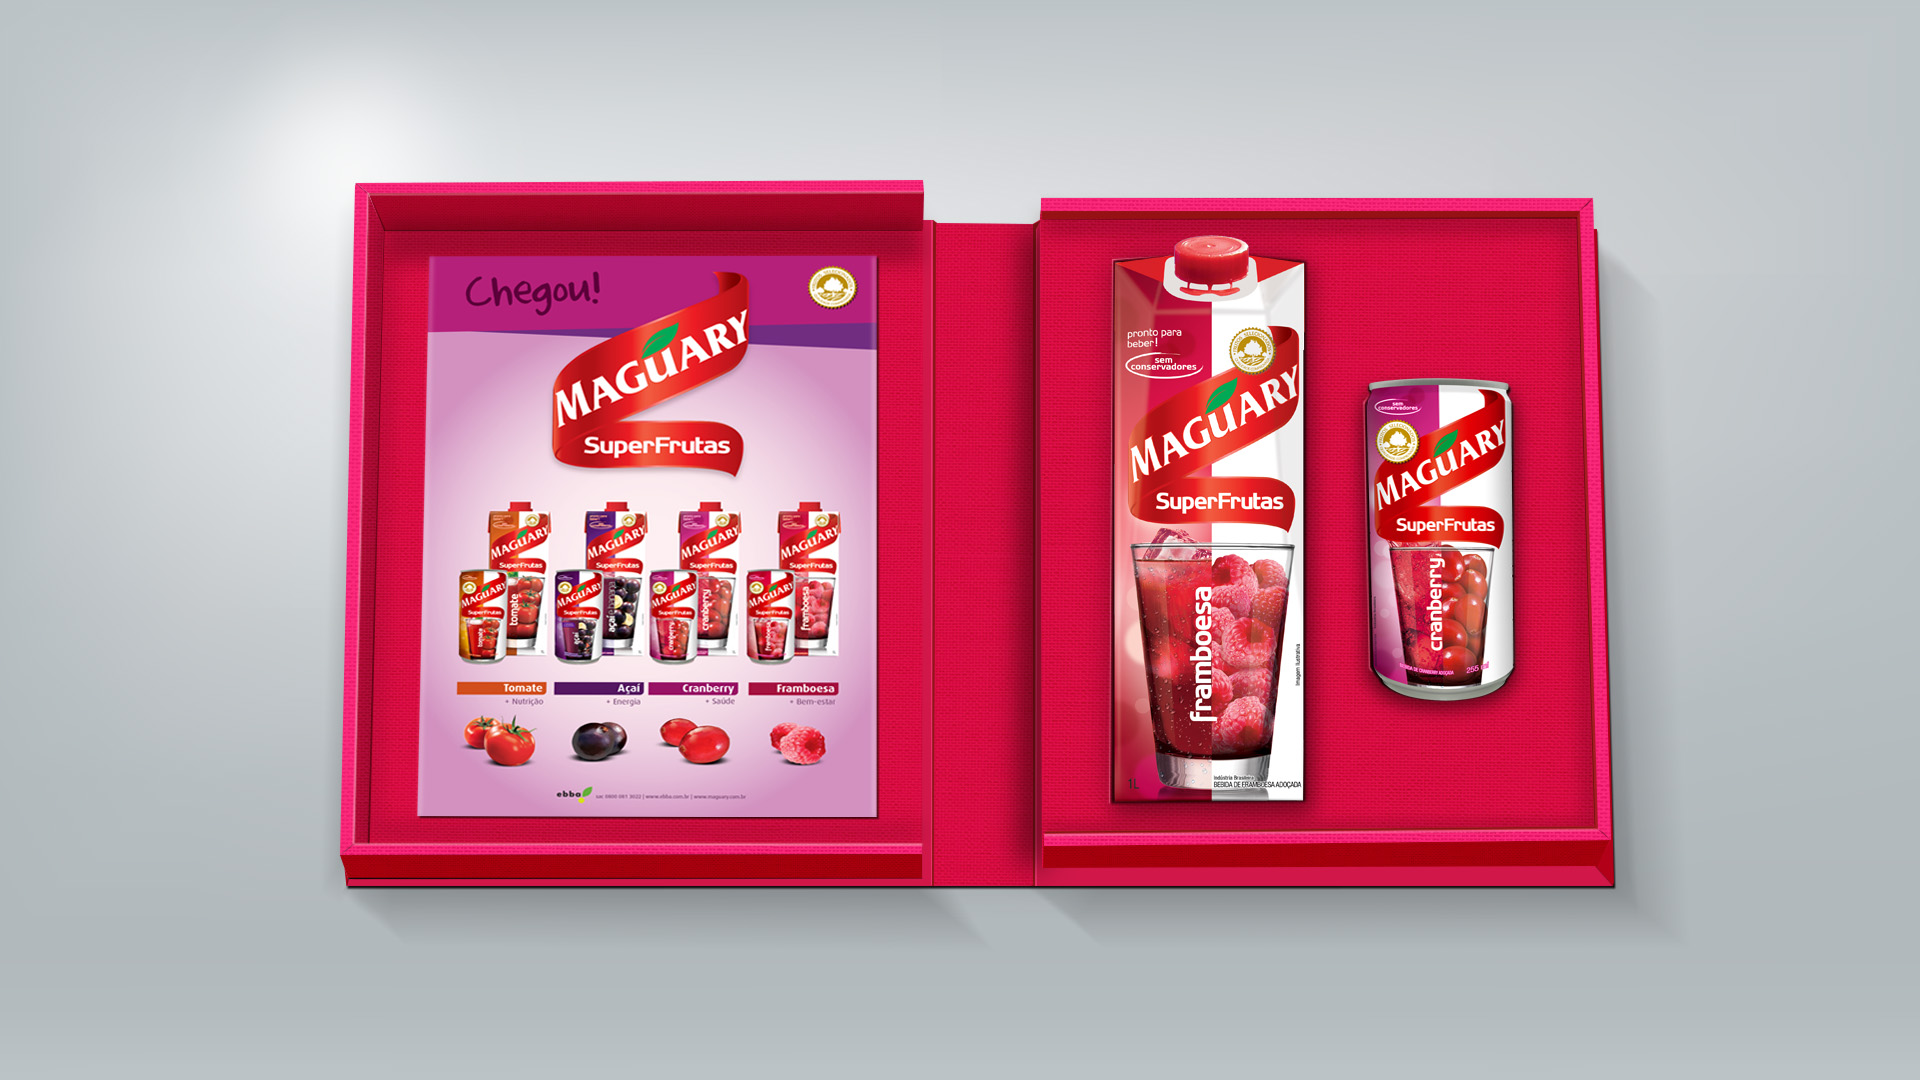 Imagem do press kit de lançamento de produtos SuperFrutas MAguary.